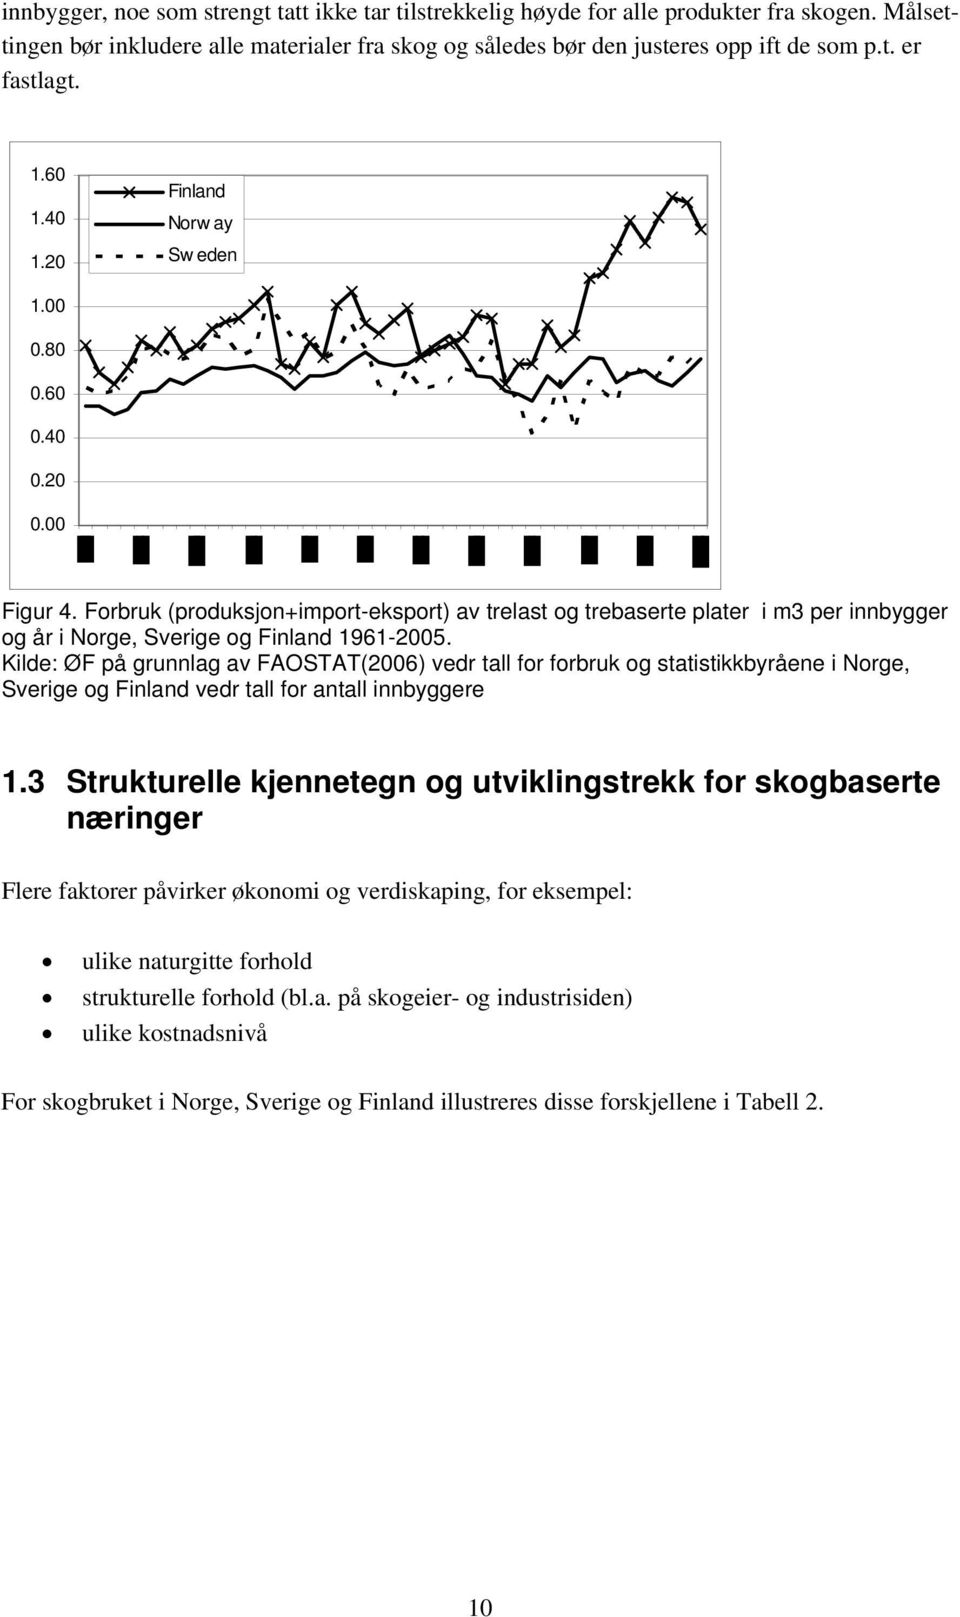 Forbruk (produksjon+import-eksport) av trelast og trebaserte plater i m3 per innbygger og år i Norge, Sverige og Finland 1961-2005.